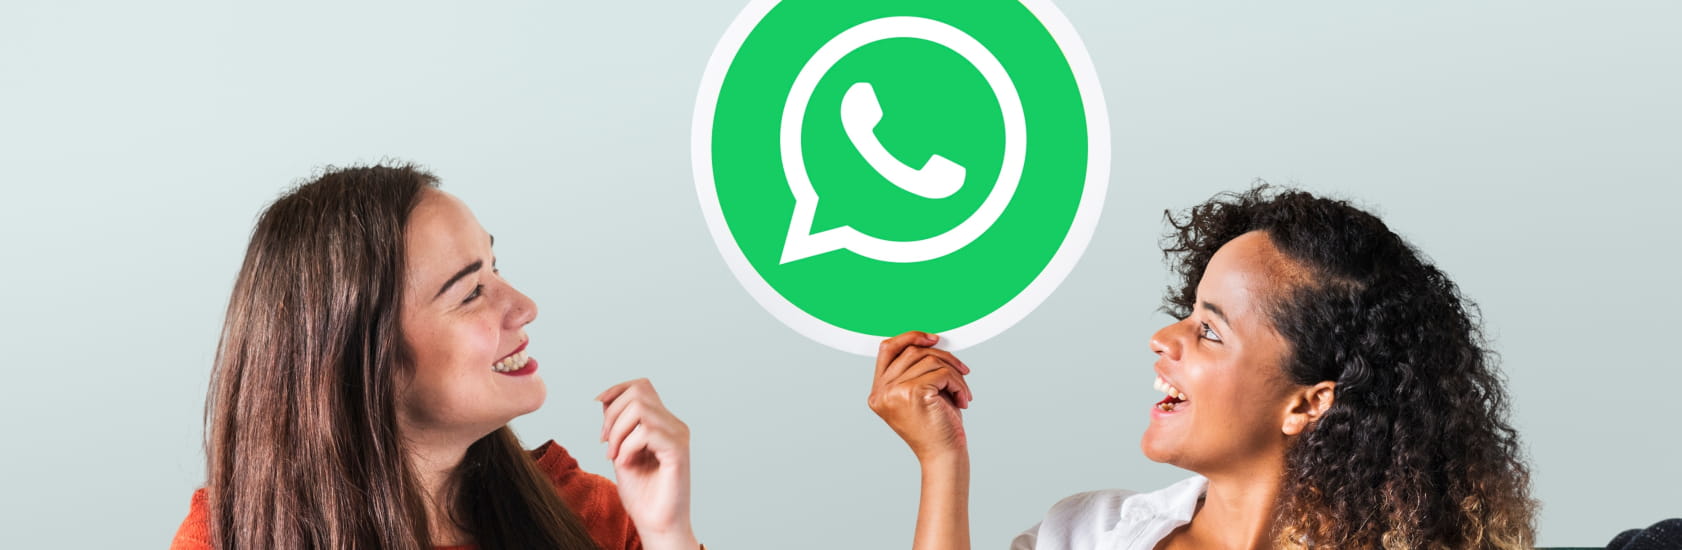 Marketing Real: Como NO usar los grupos de Whatsapp en tu negocio